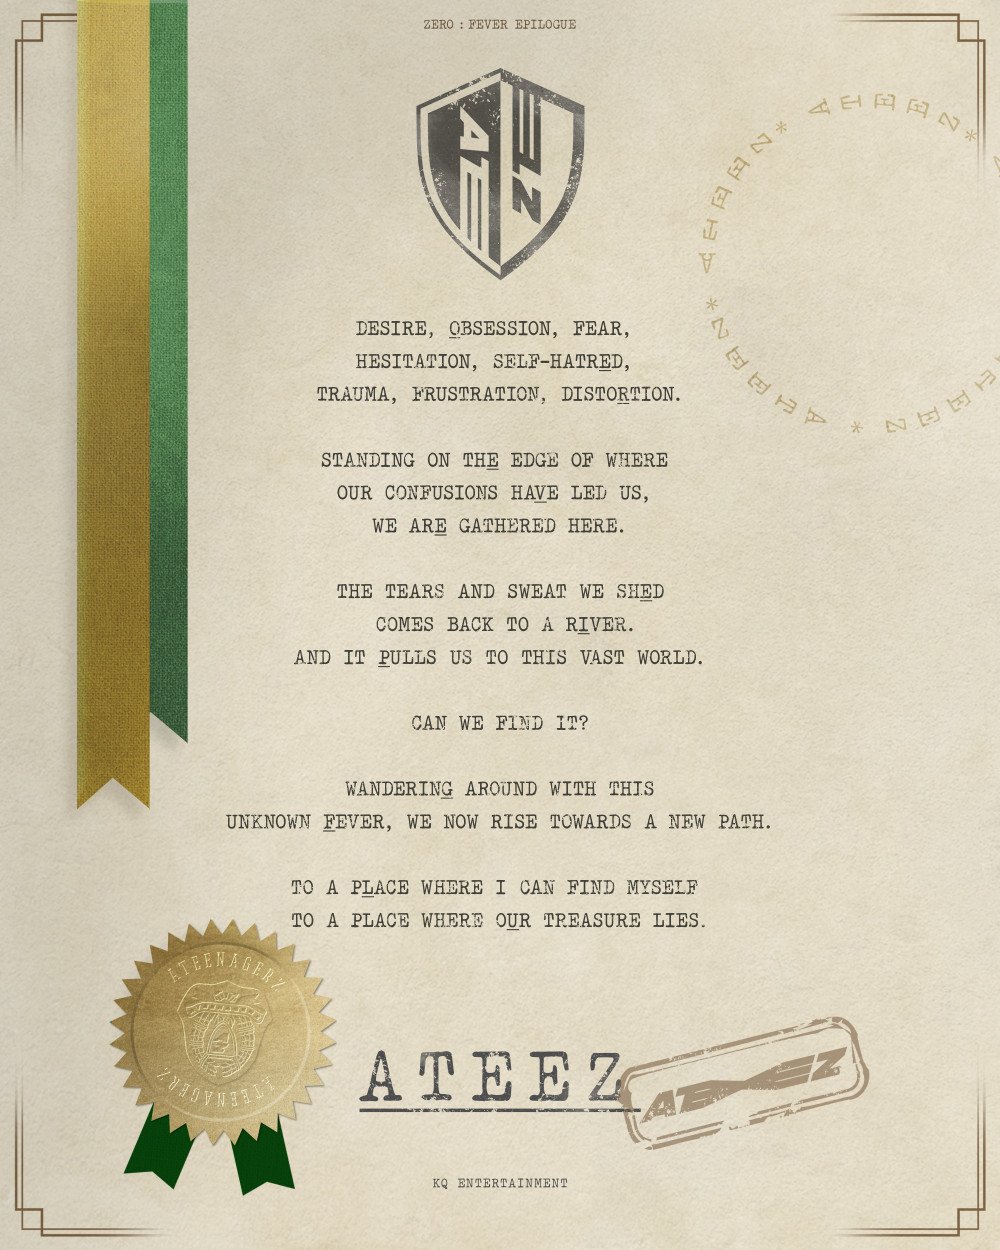 [Камбэк] ATEEZ альбом «ZERO: FEVER EPILOGUE»: музыкальный клип "The Real"